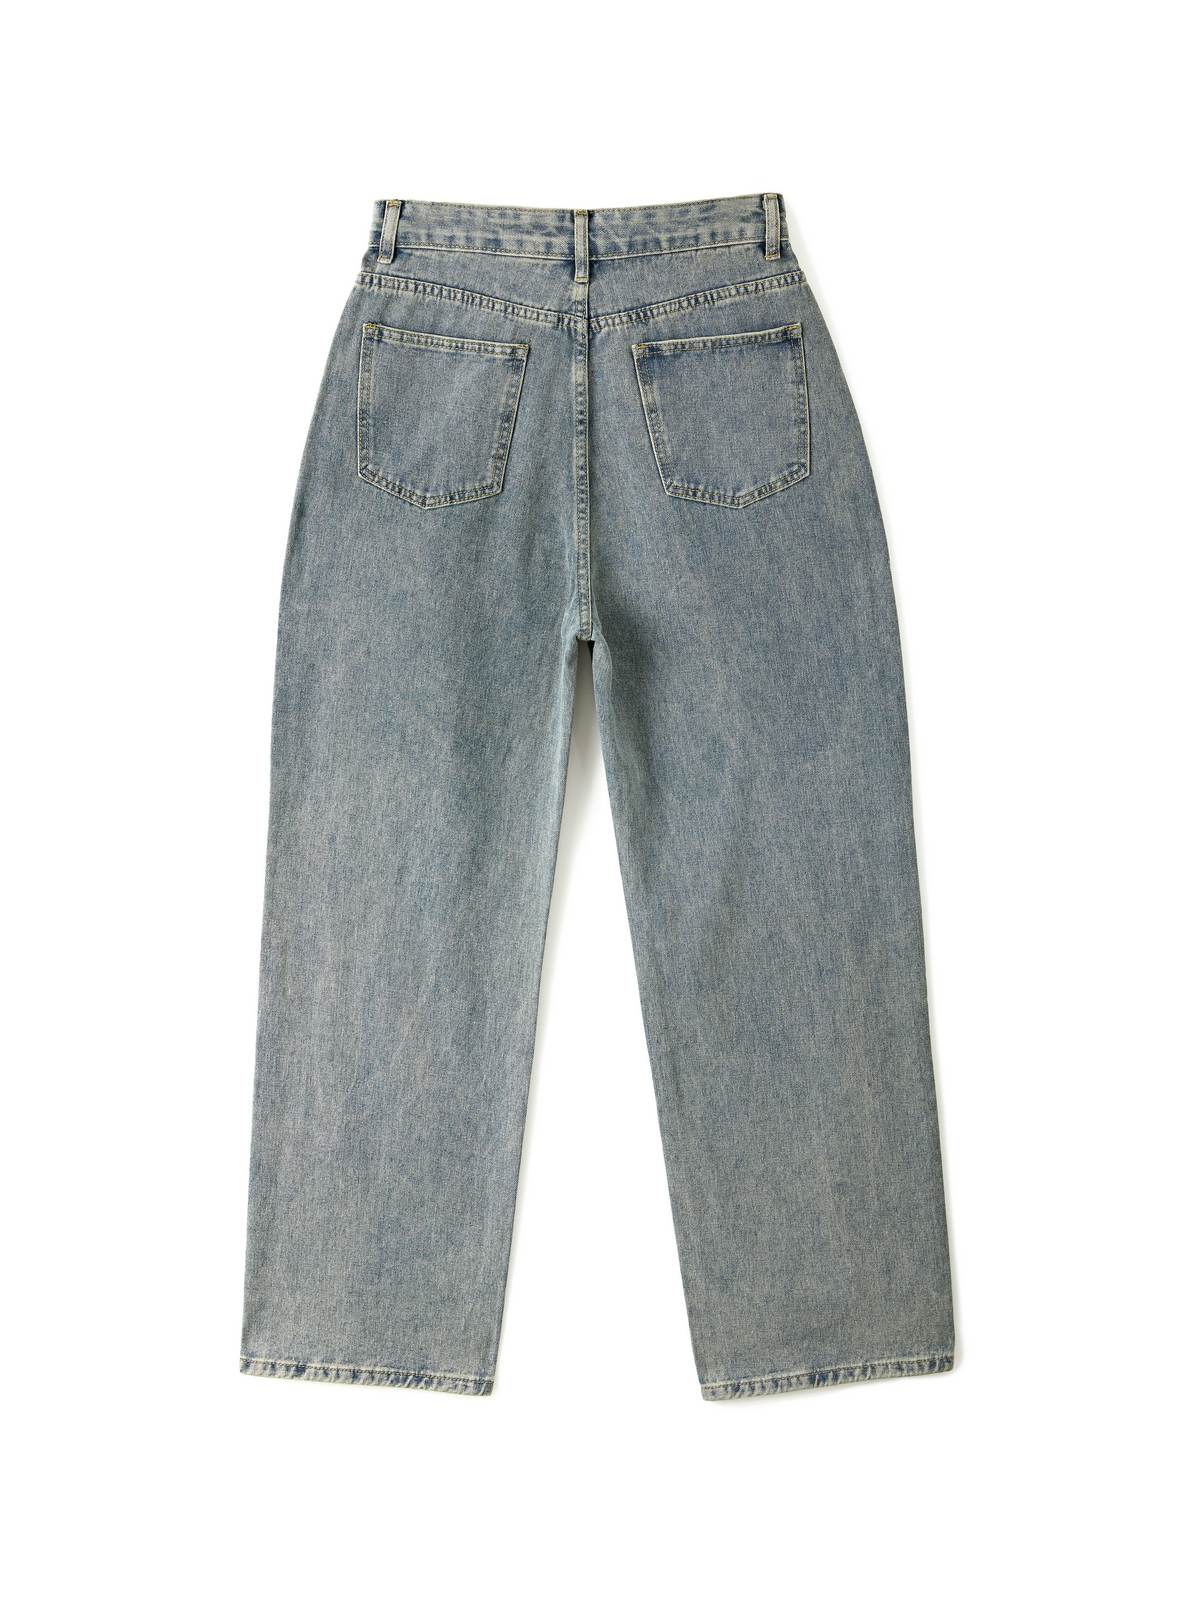 90s Washed High Waist Boyfriend Jeans